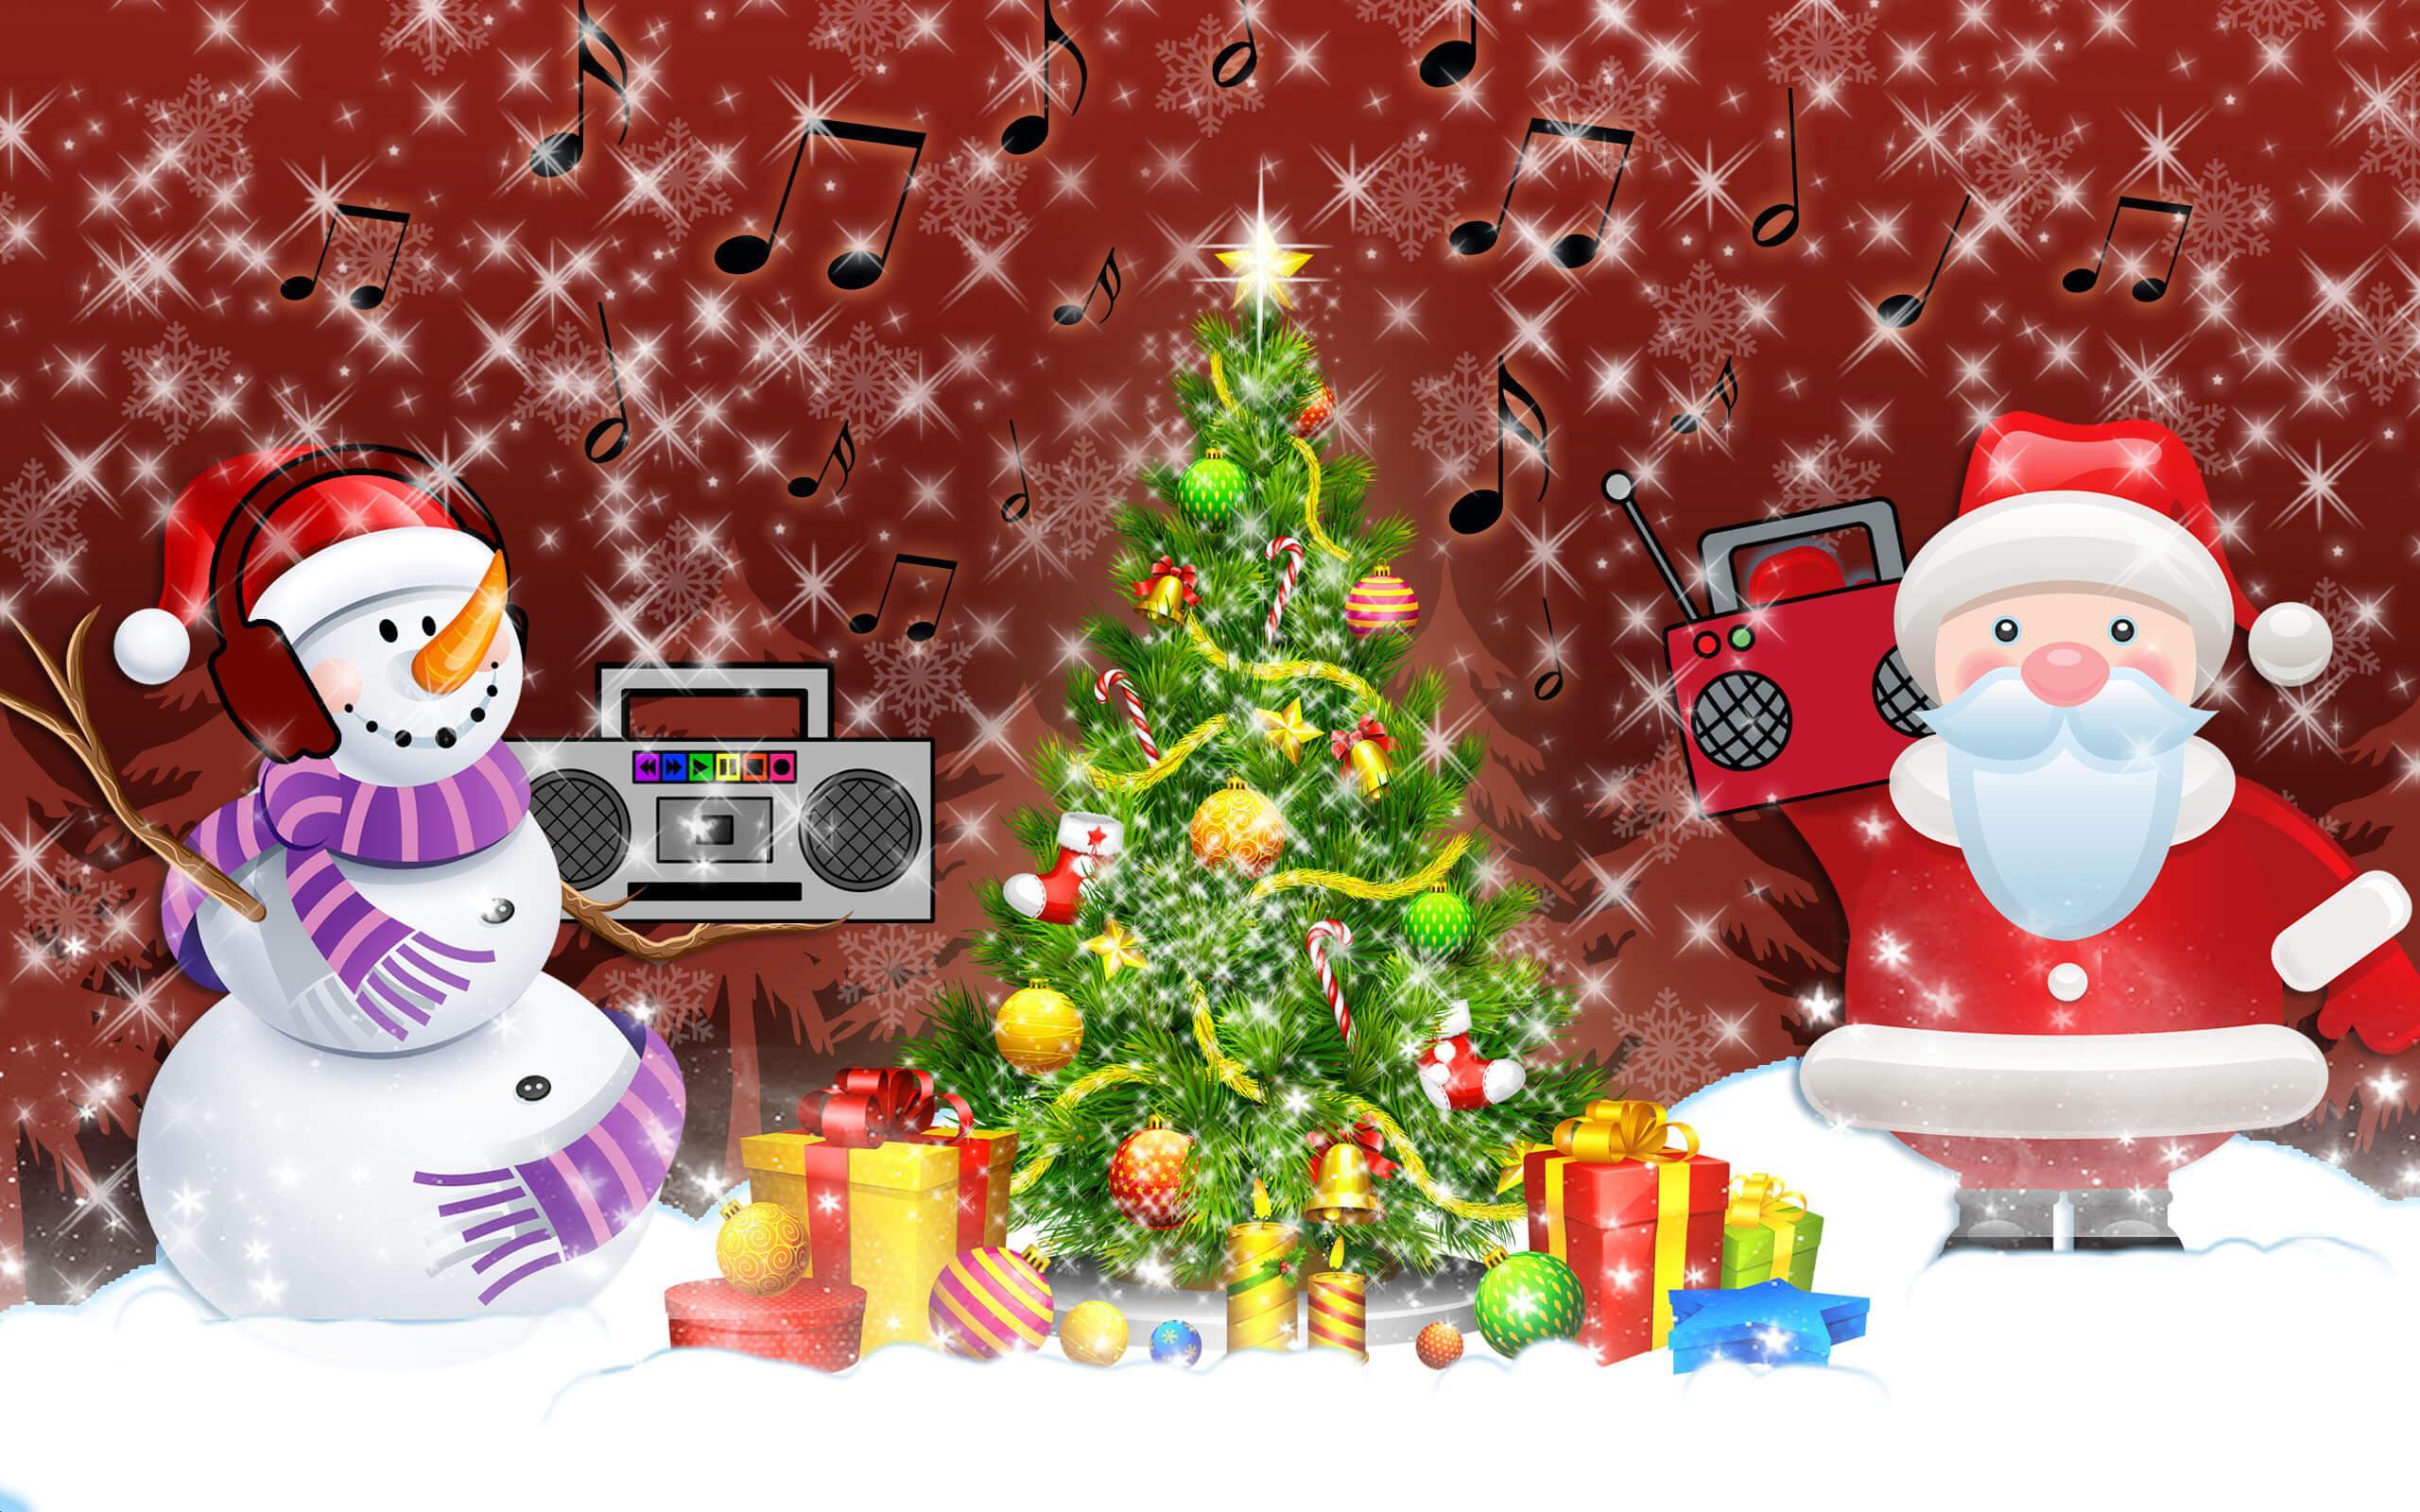 Canzoni Di Natale Per Bambini.Canzoni Di Natale Musica Per Bambini Gratis For Android Apk Download